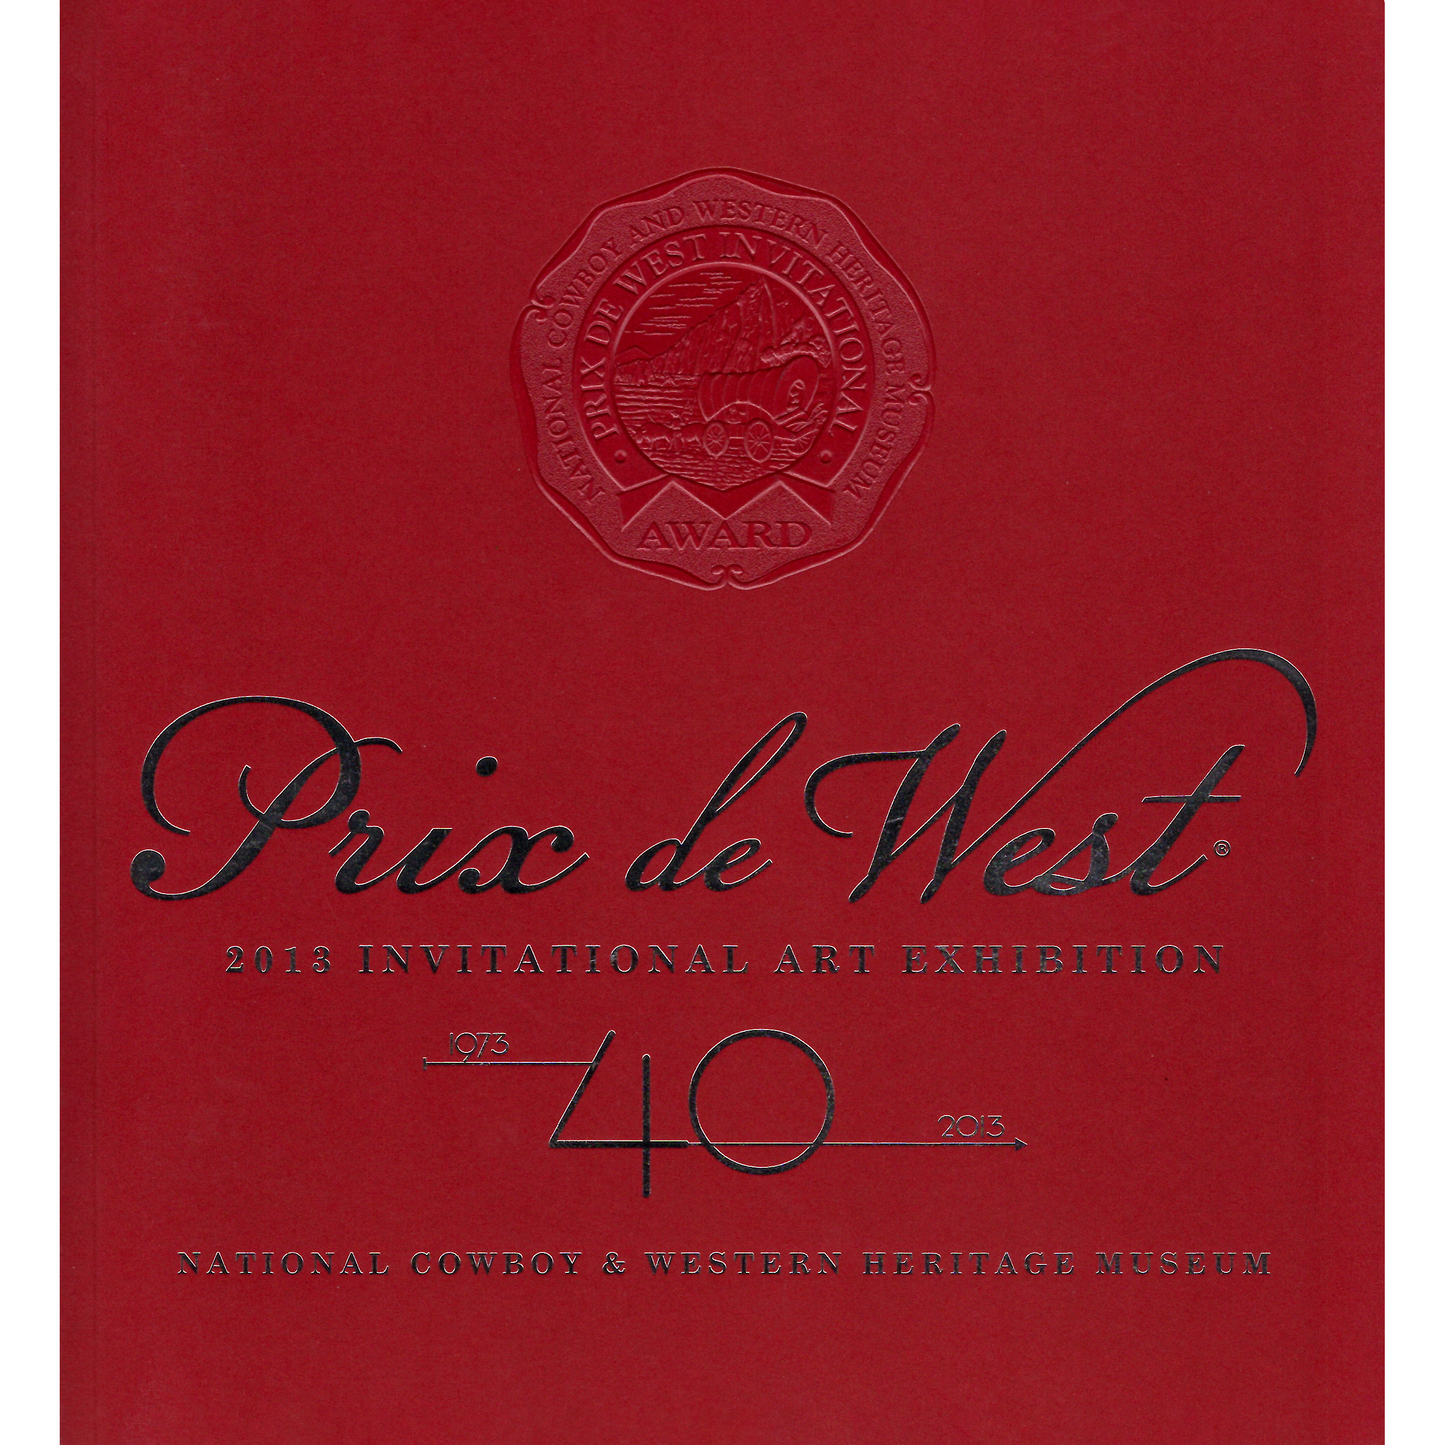 2013 Prix de West Exhibition Catalog